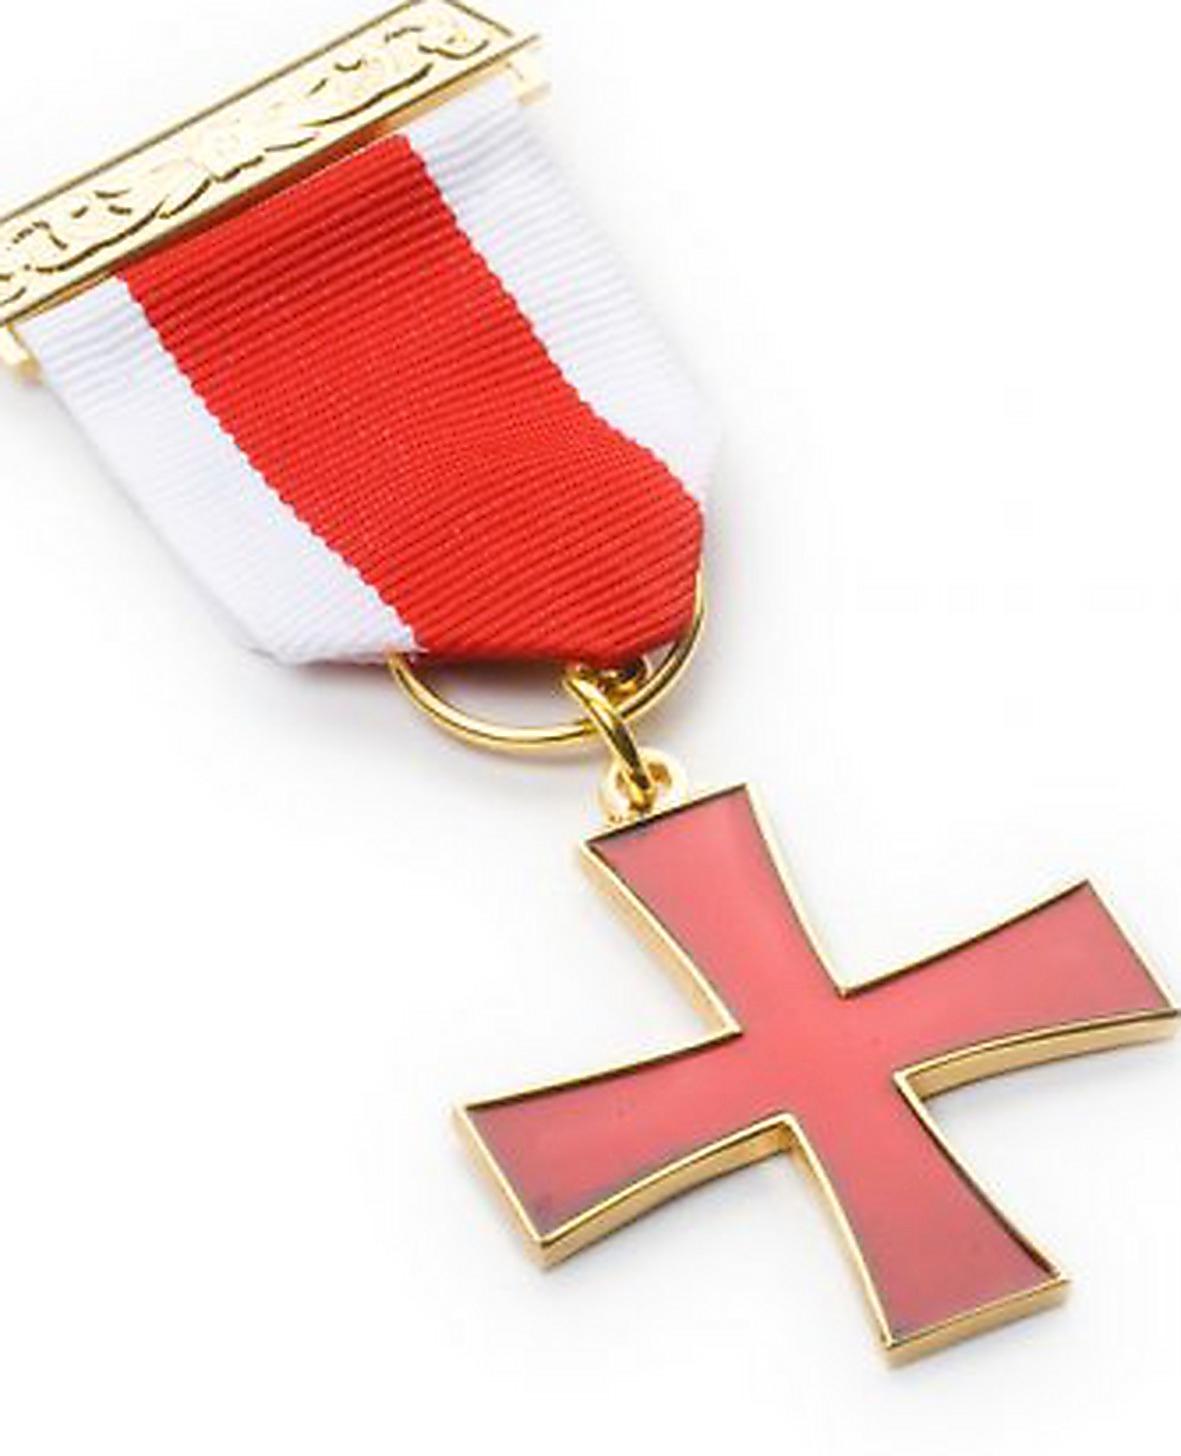 I manifestet kallar Anders Behring Breivik korset för Justiciar Knight Military Order of the Martyrs, som han hävdar ges till de medlemmar som mister livet i en operation. Egentligen heter det Knights Templar Breast Jewel.